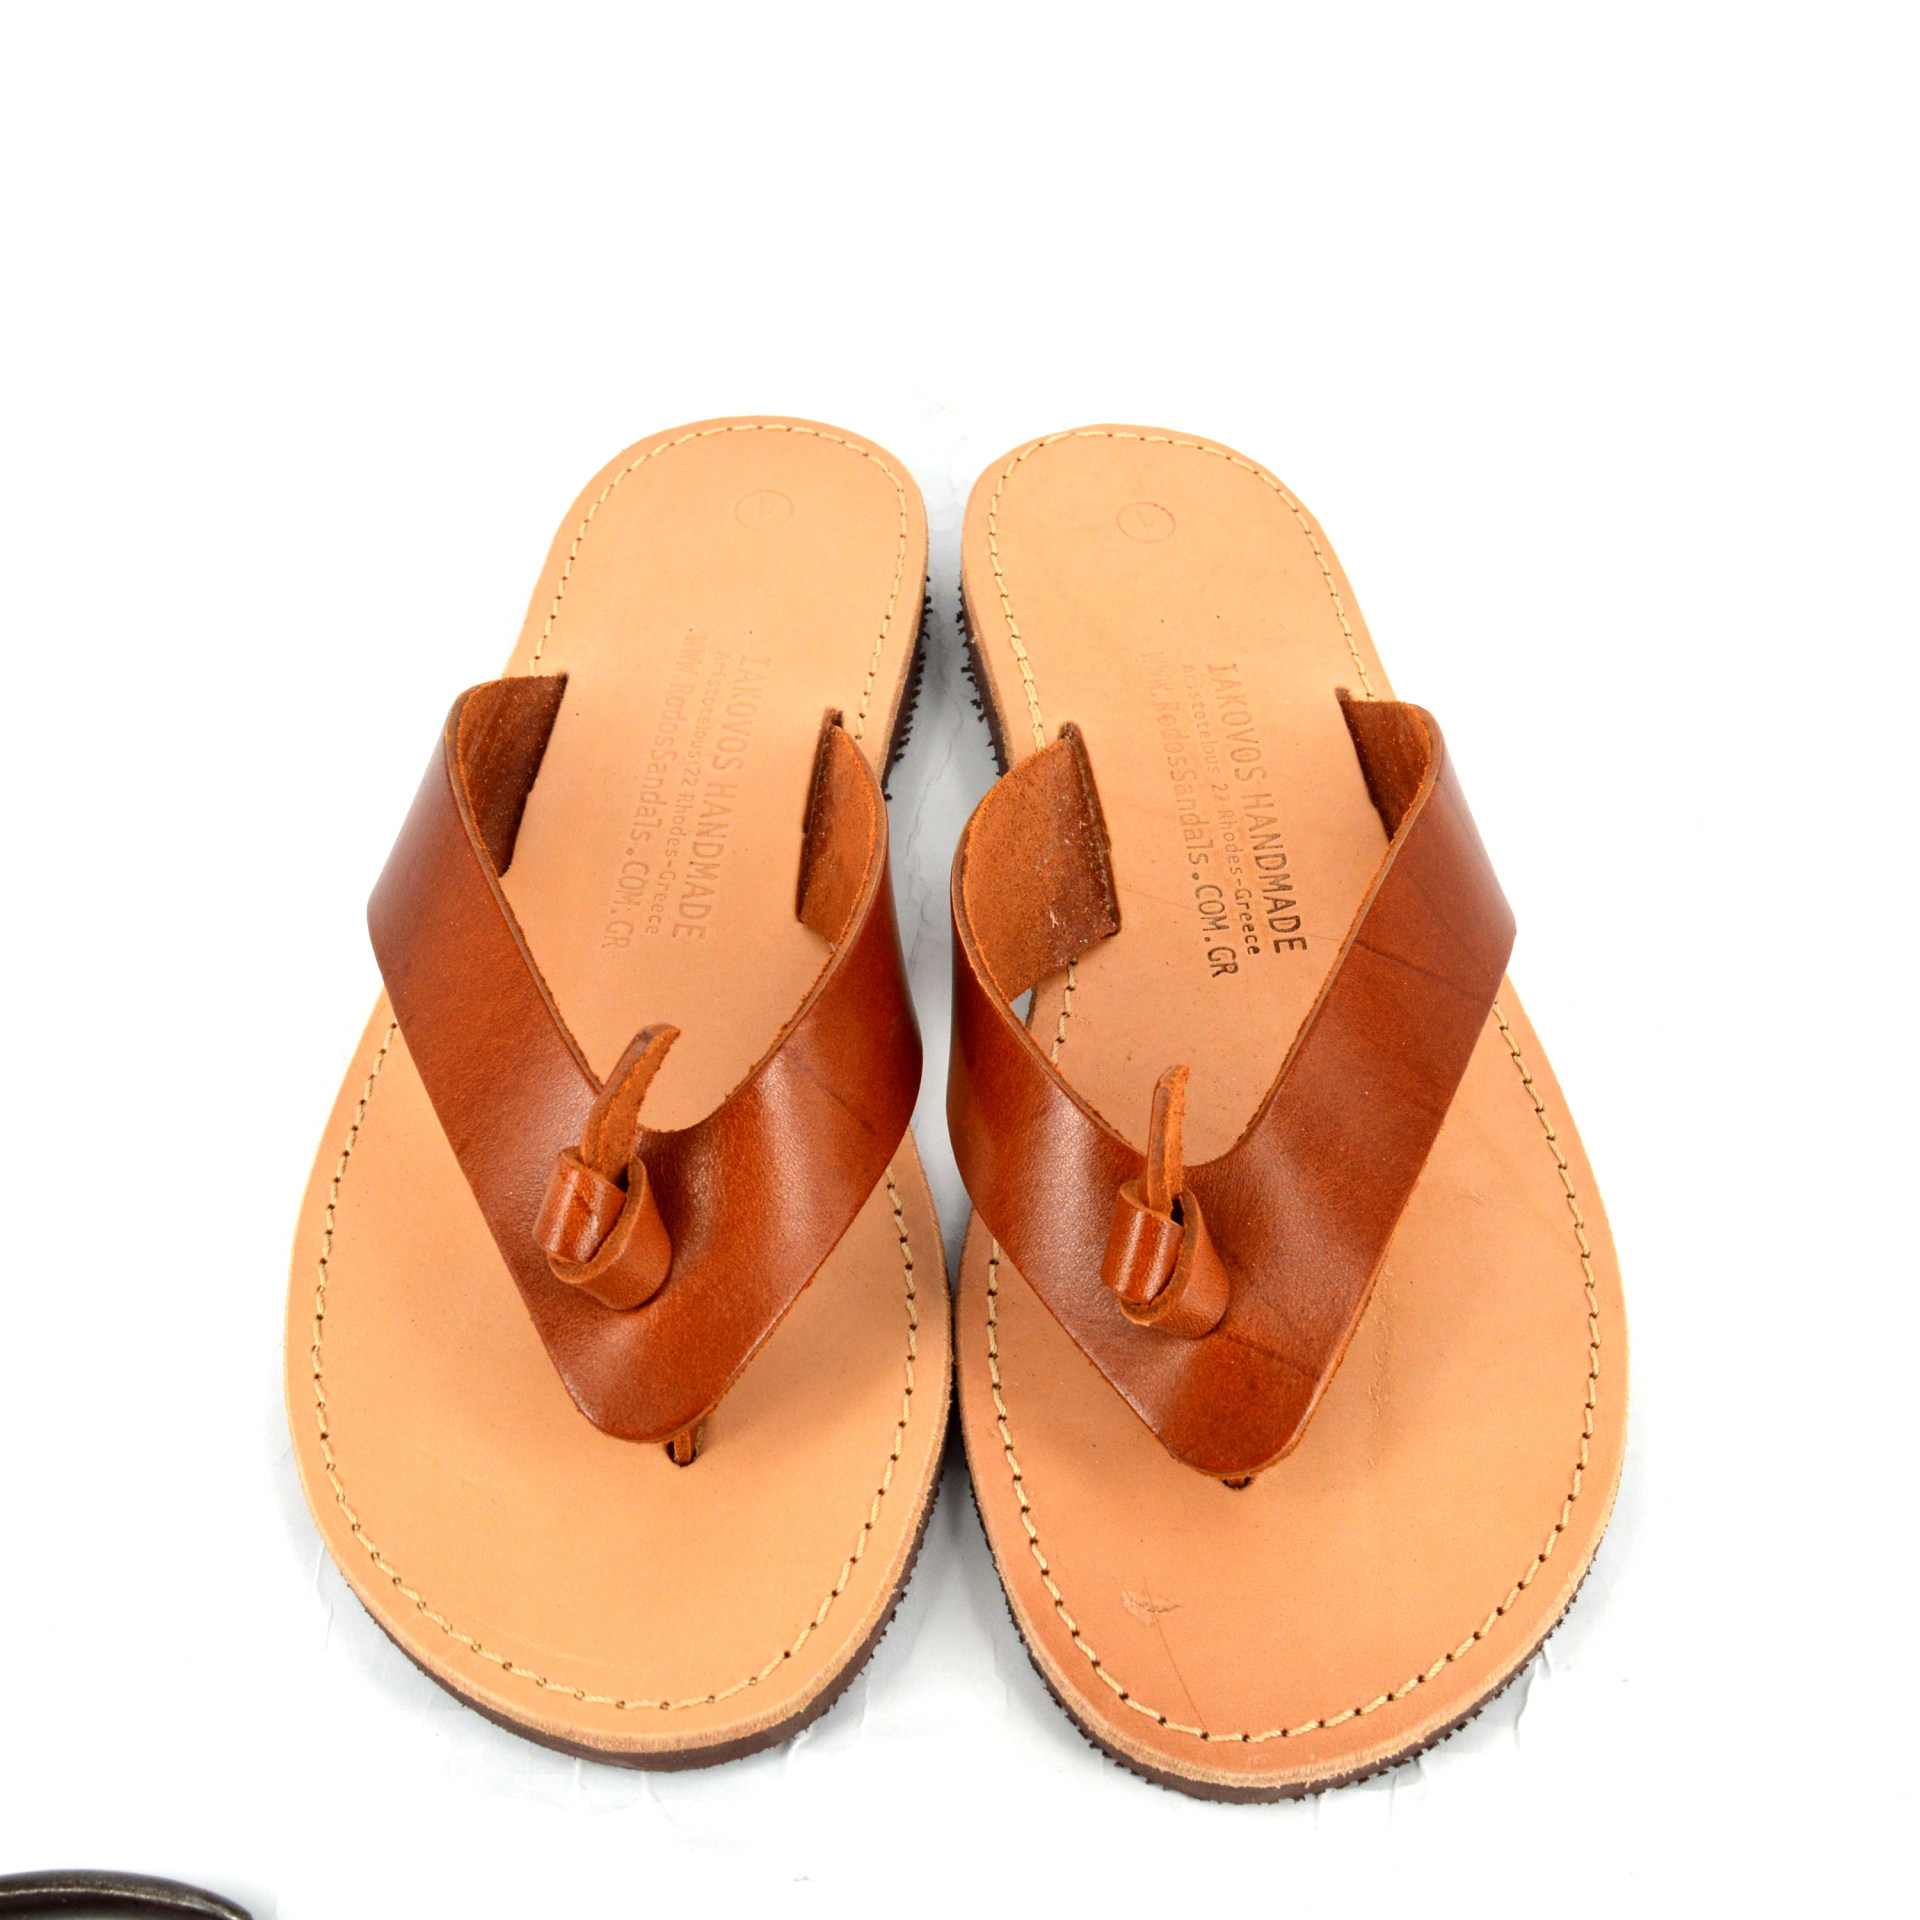 LIDIOS – Rodos Sandals – IAKOVOS Hand Made Sandals